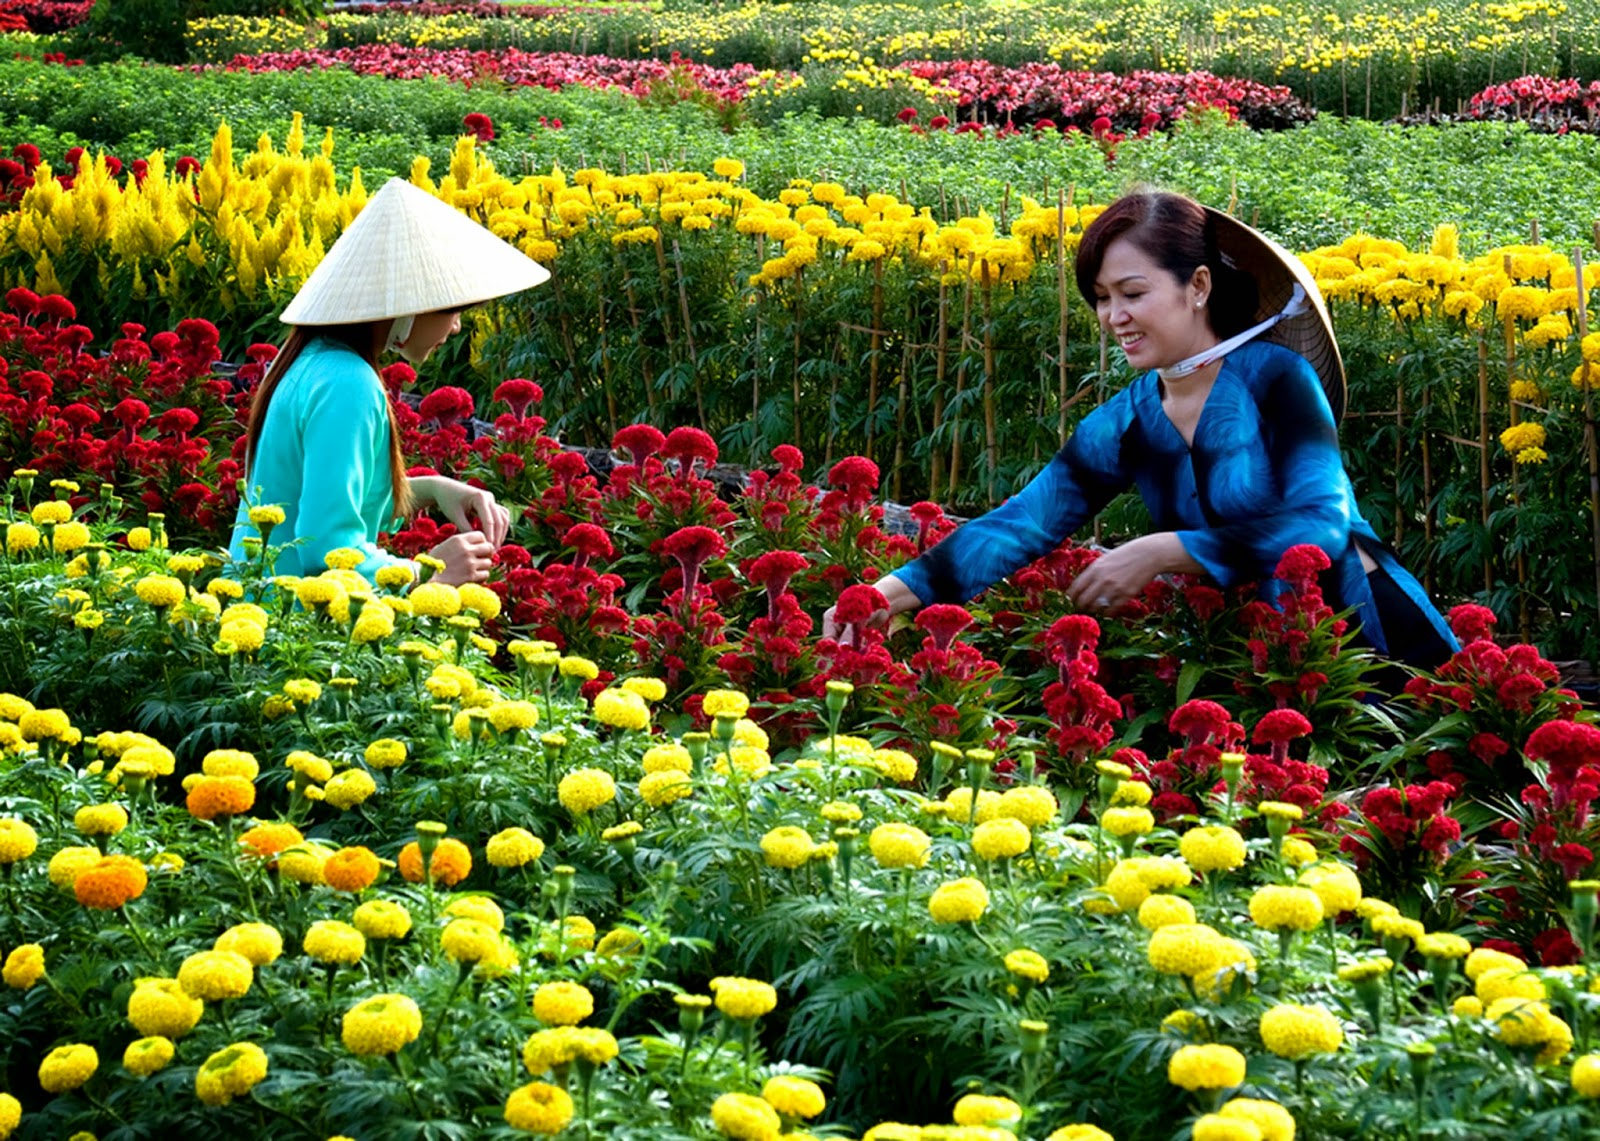 Du lịch Đà Lạt tham quan trang trại rau và hoa mùa Thu 3 ngày từ Sài Gòn